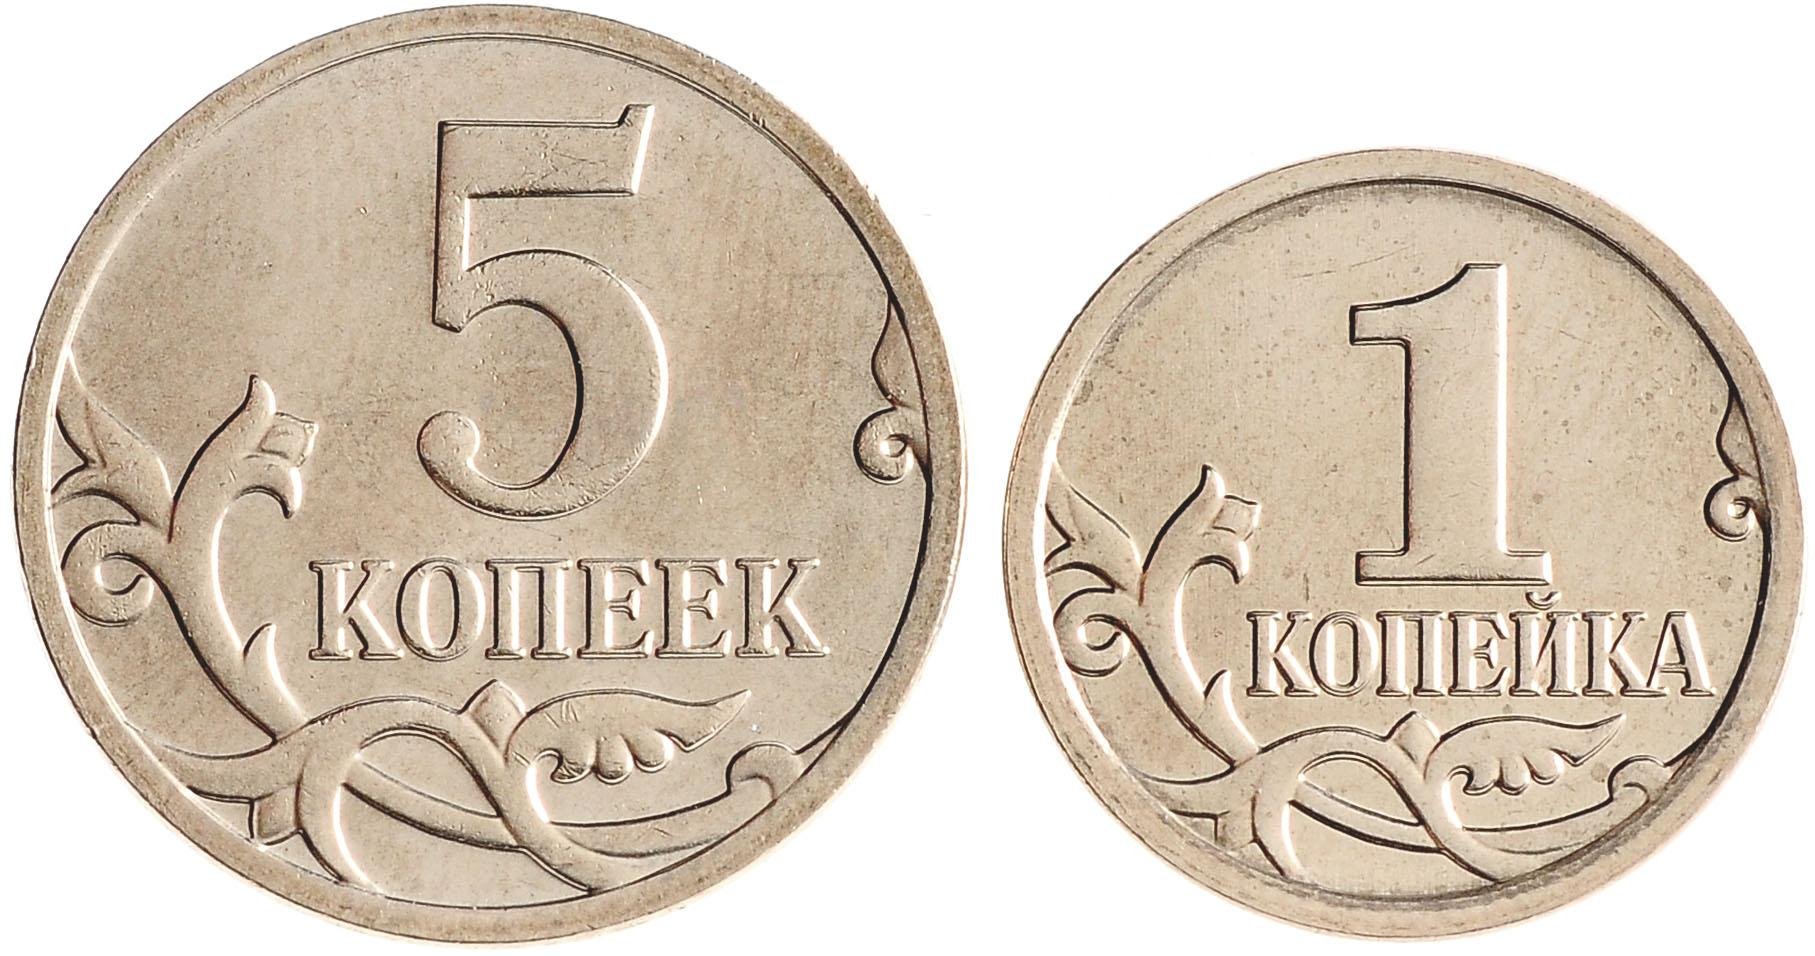 Игры за один рубль. Монеты 1 копейка 5 копеек 10 копеек 50 копеек. Монета 1 копейка РФ. Российские монеты 1 копейка. Копейка для детей.